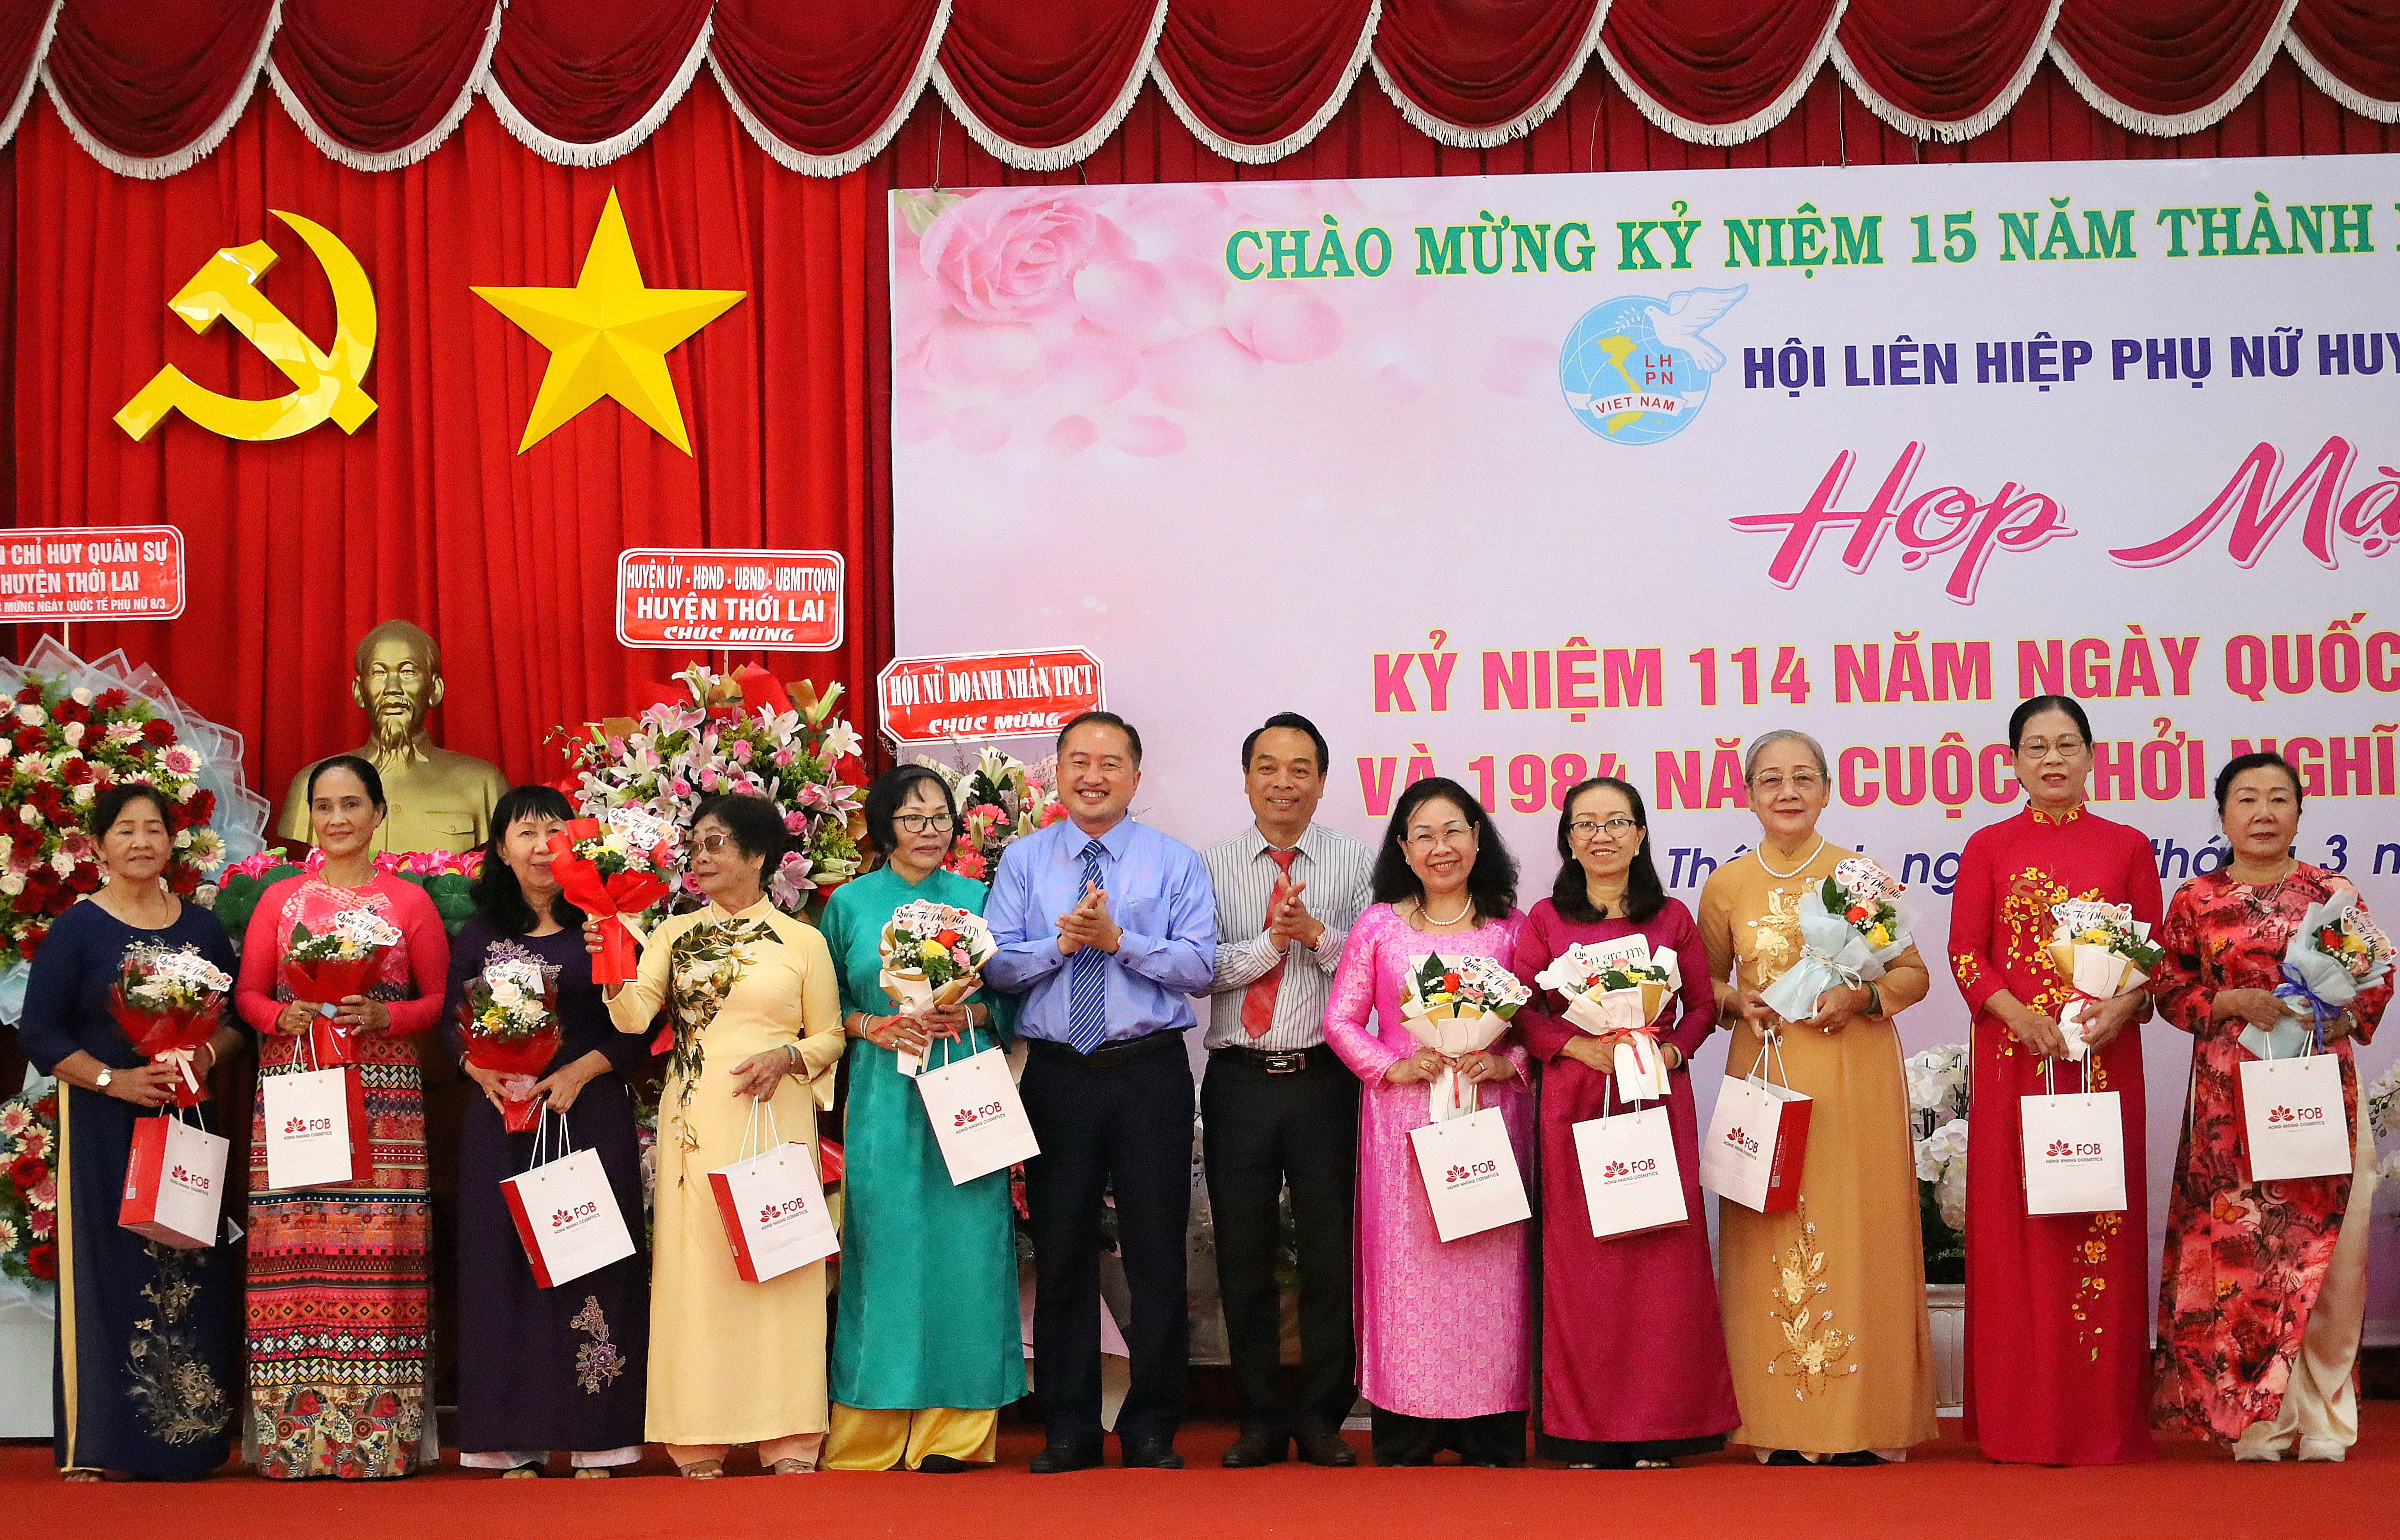 Ông Huỳnh Văn Tùng – Phó Bí thư thường trực Huyện ủy Thới Lai và ông Lê Tiến Dũng - Chủ tịch HĐND huyện Thới Lai trao tặng quà cho các đại biểu.